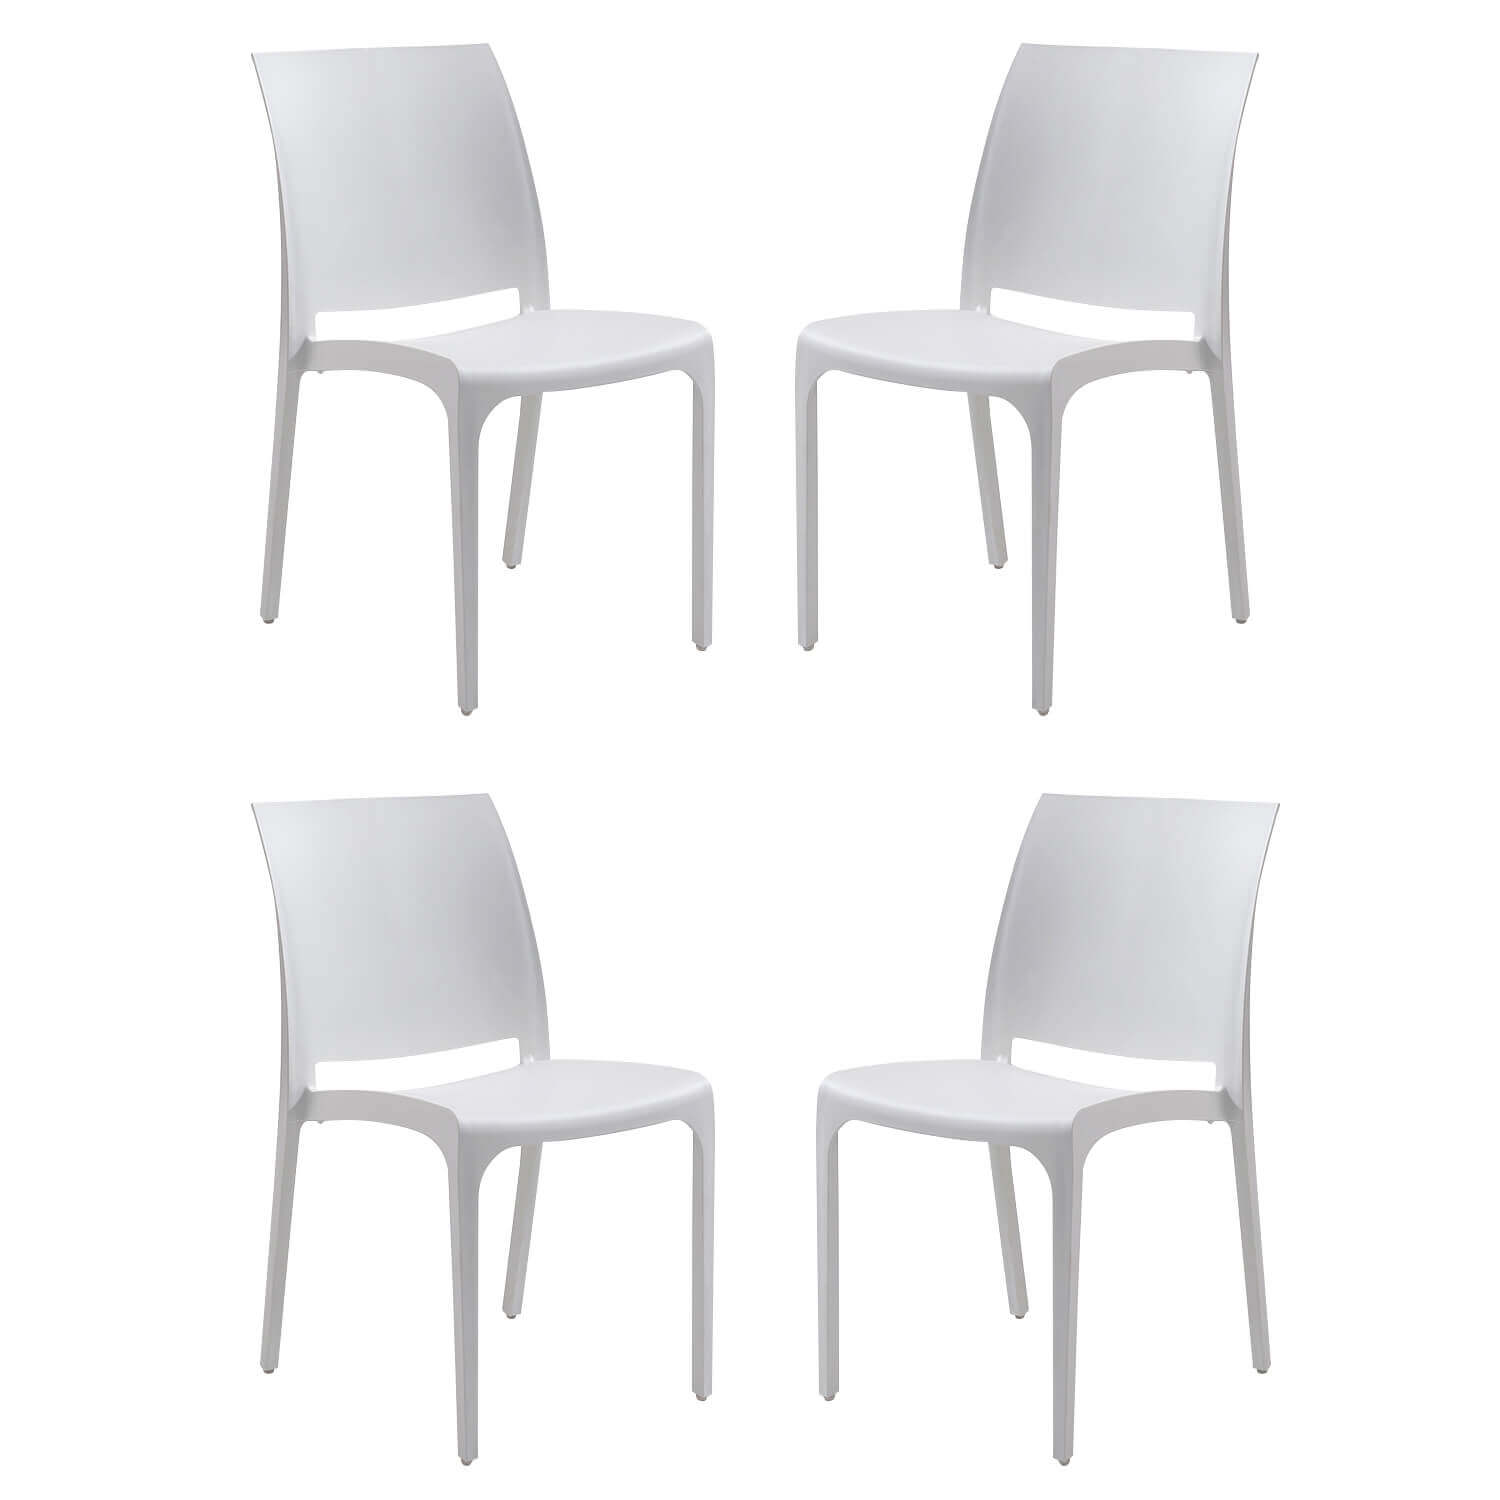 Milani Home set di 4 sedie poltrone da giardino in plastica design moderno colorata Bianco Bianco 46 x 80 x 54 cm